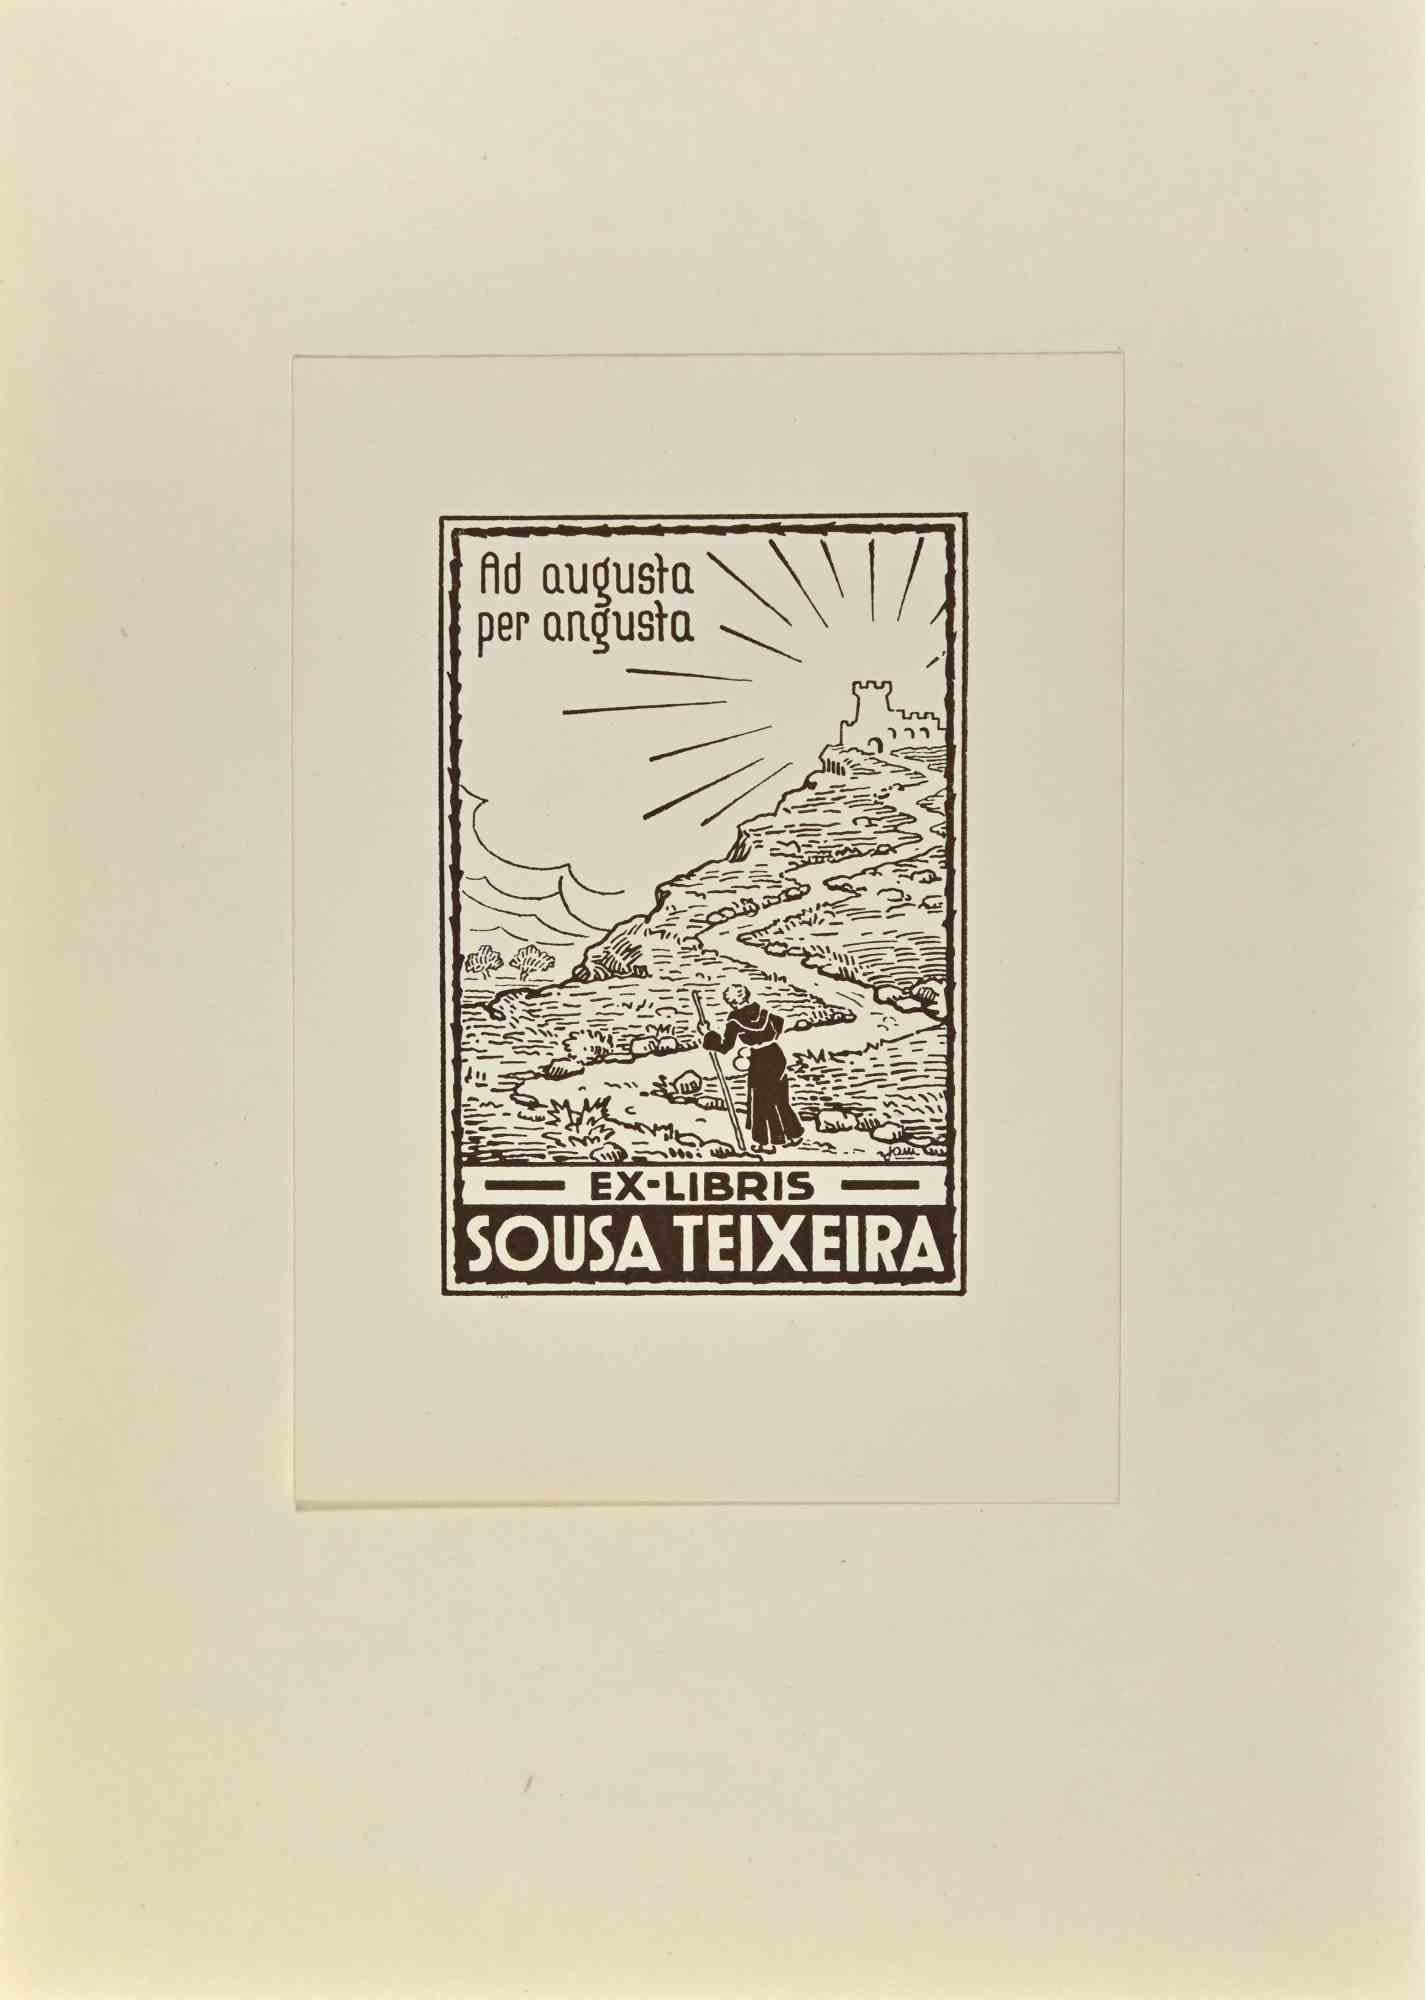  Ex Libris - Sousa Teixeira - Holzschnitt - Mitte des 20. Jahrhunderts – Art von Unknown